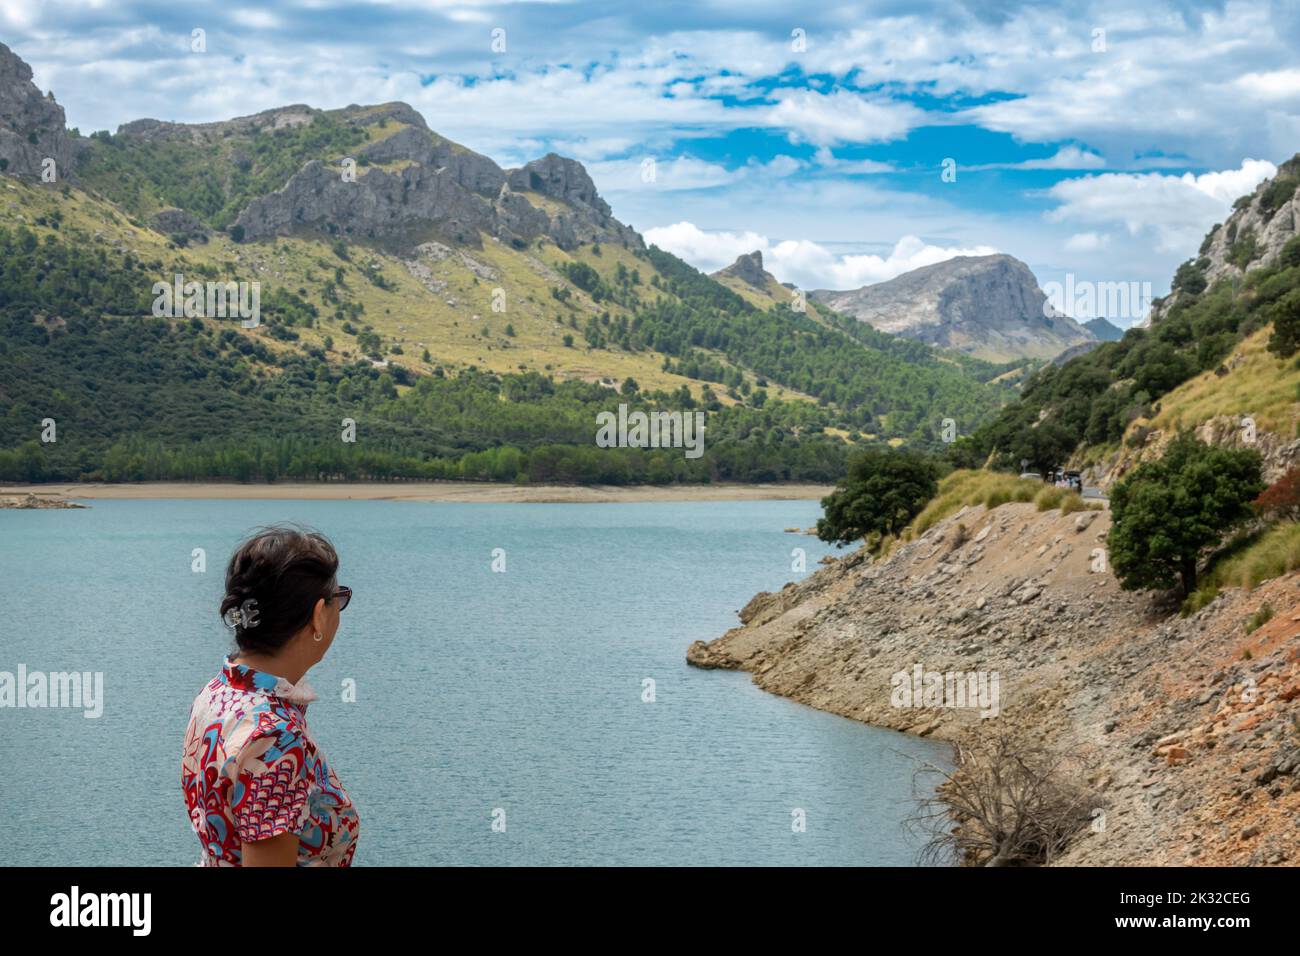 Donna di 50 anni con un abito fiorito e occhiali da sole che ammirano la bellezza del bacino di Gorg Blau a Maiorca (Spagna) una mattina d'estate Foto Stock